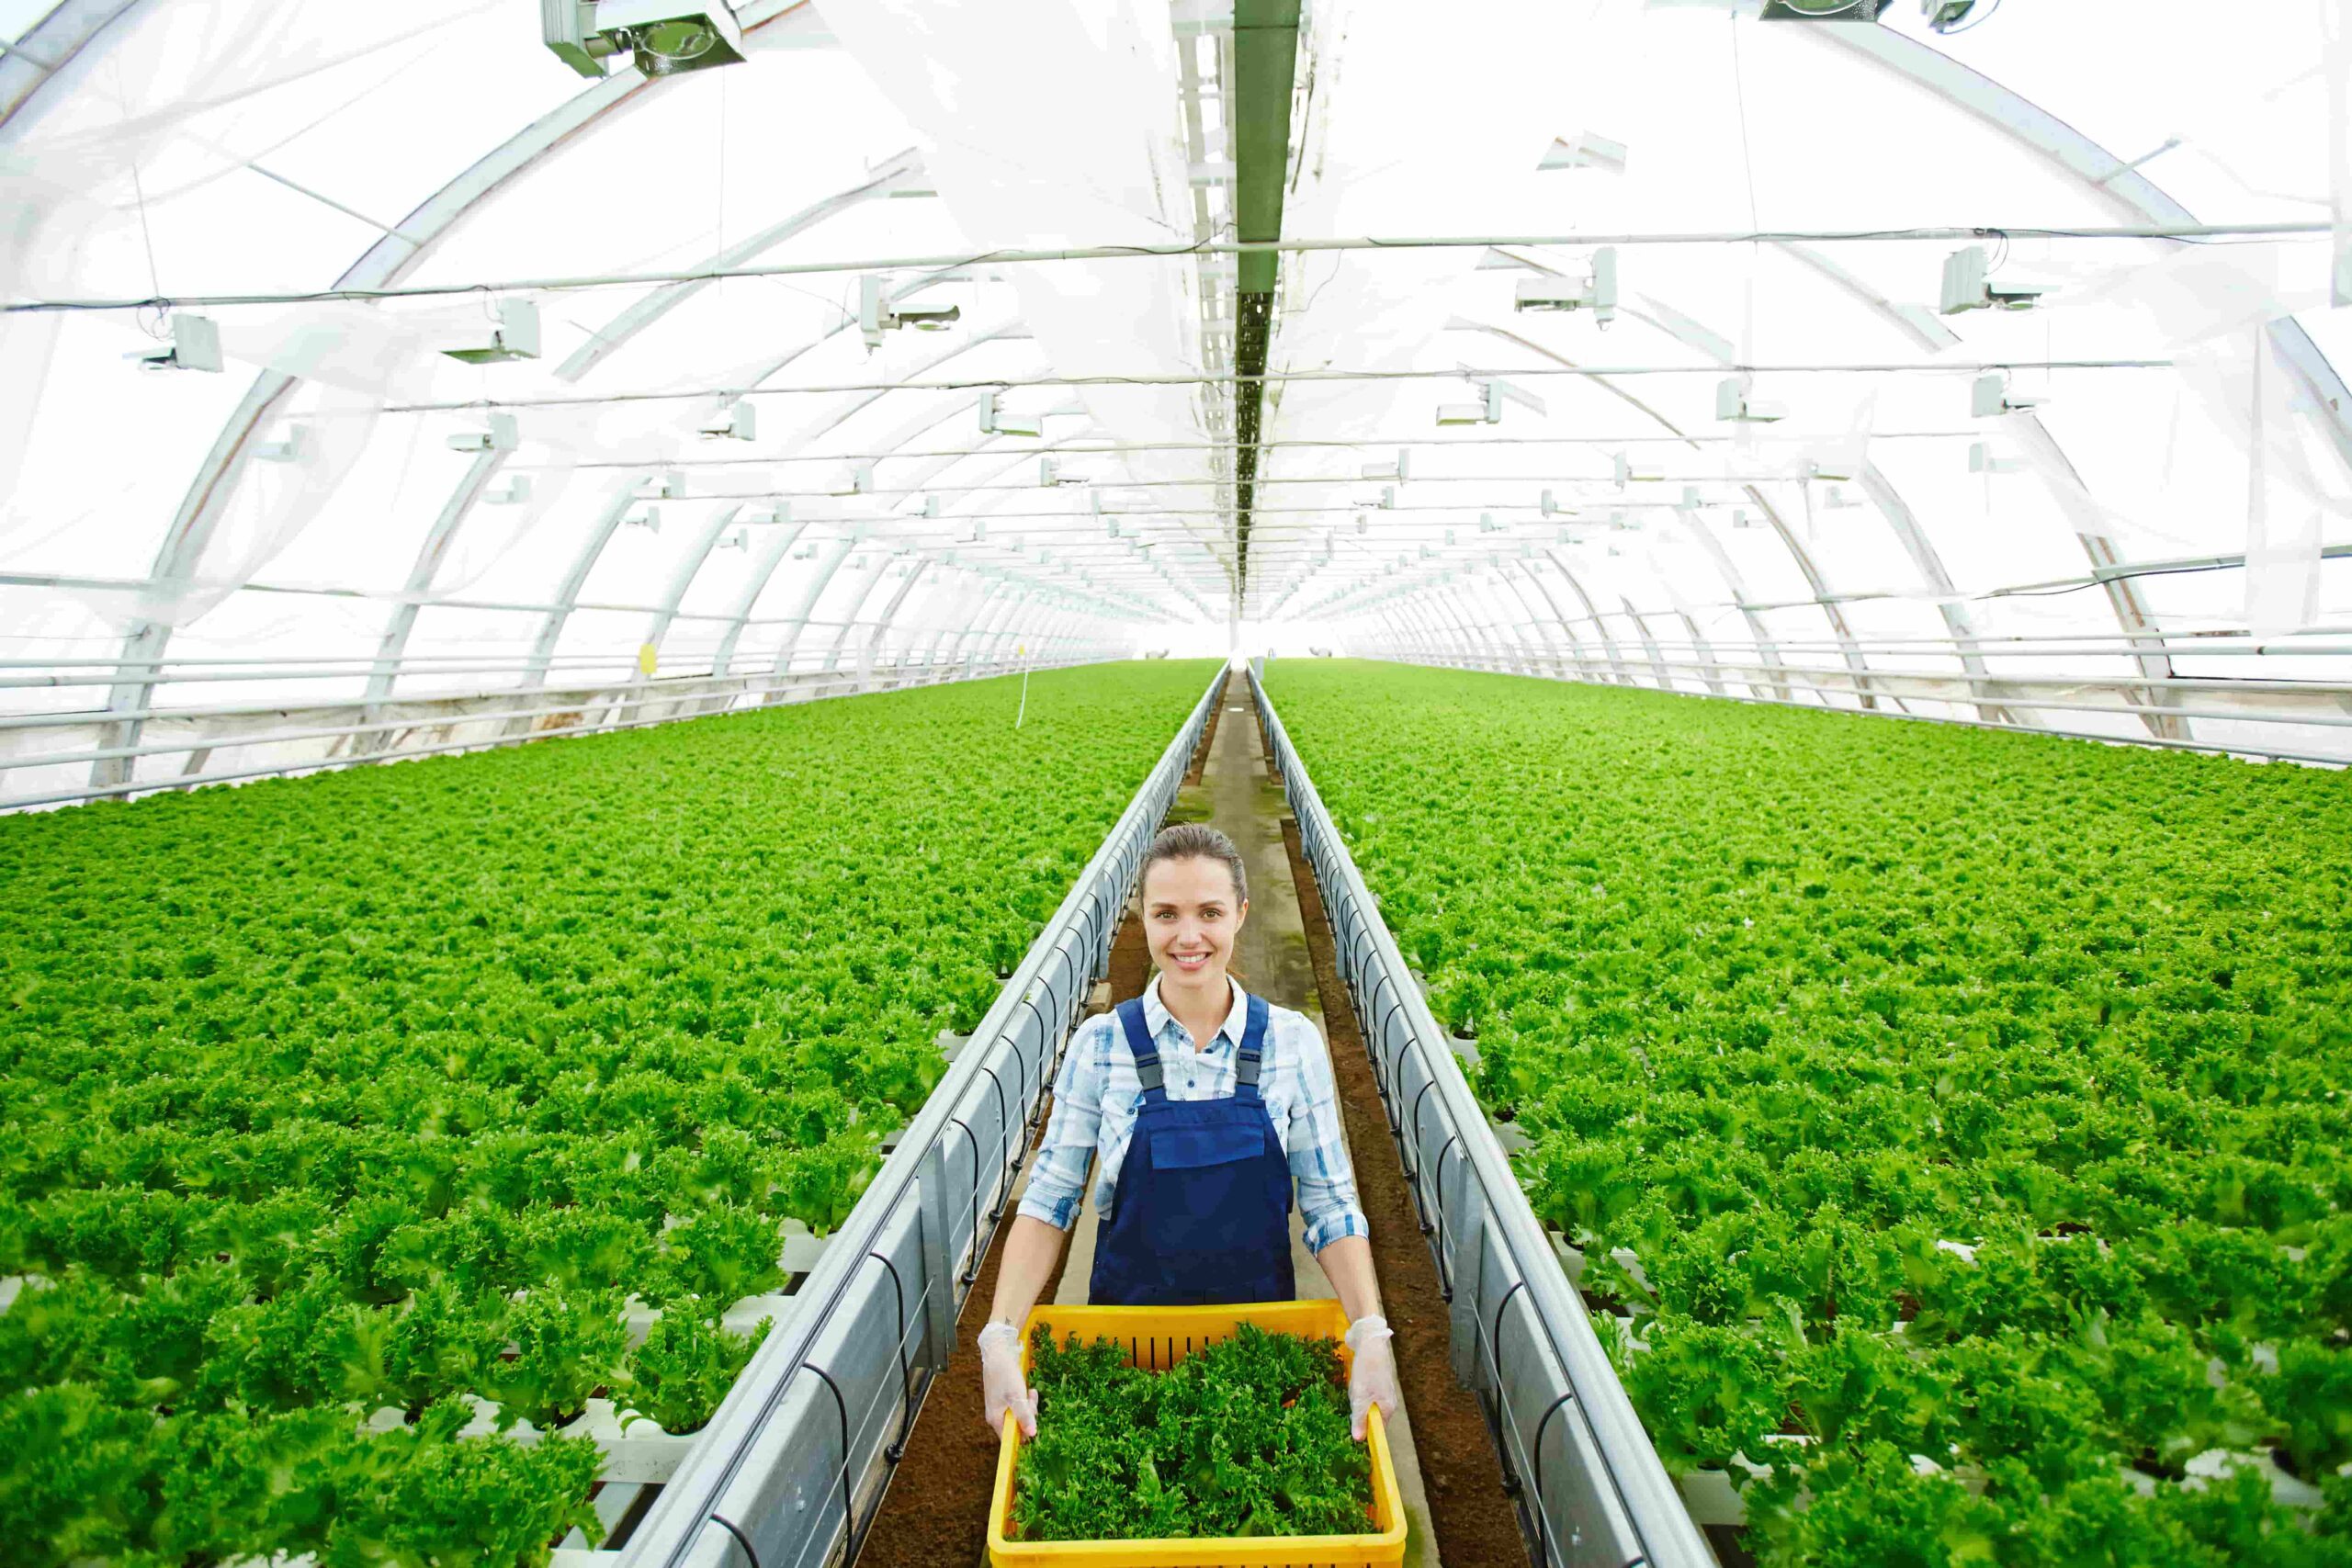 growing-lettuce-in-greenhouse-2022-02-01-22-39-38-utc-min